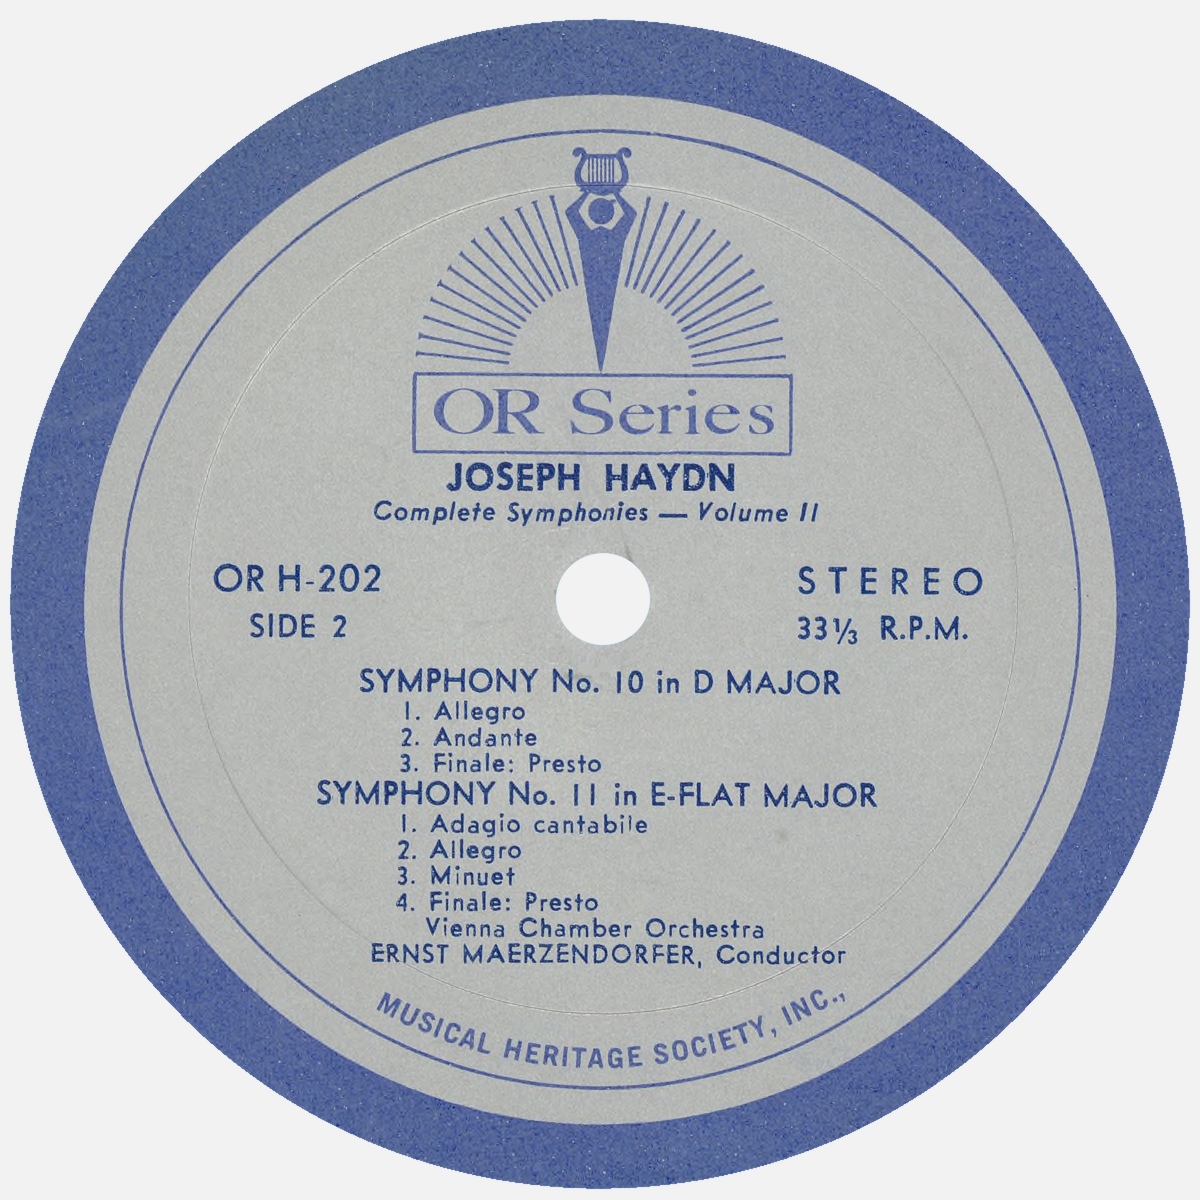 Étiquette verso du disque MHS Orpheus OR H-202